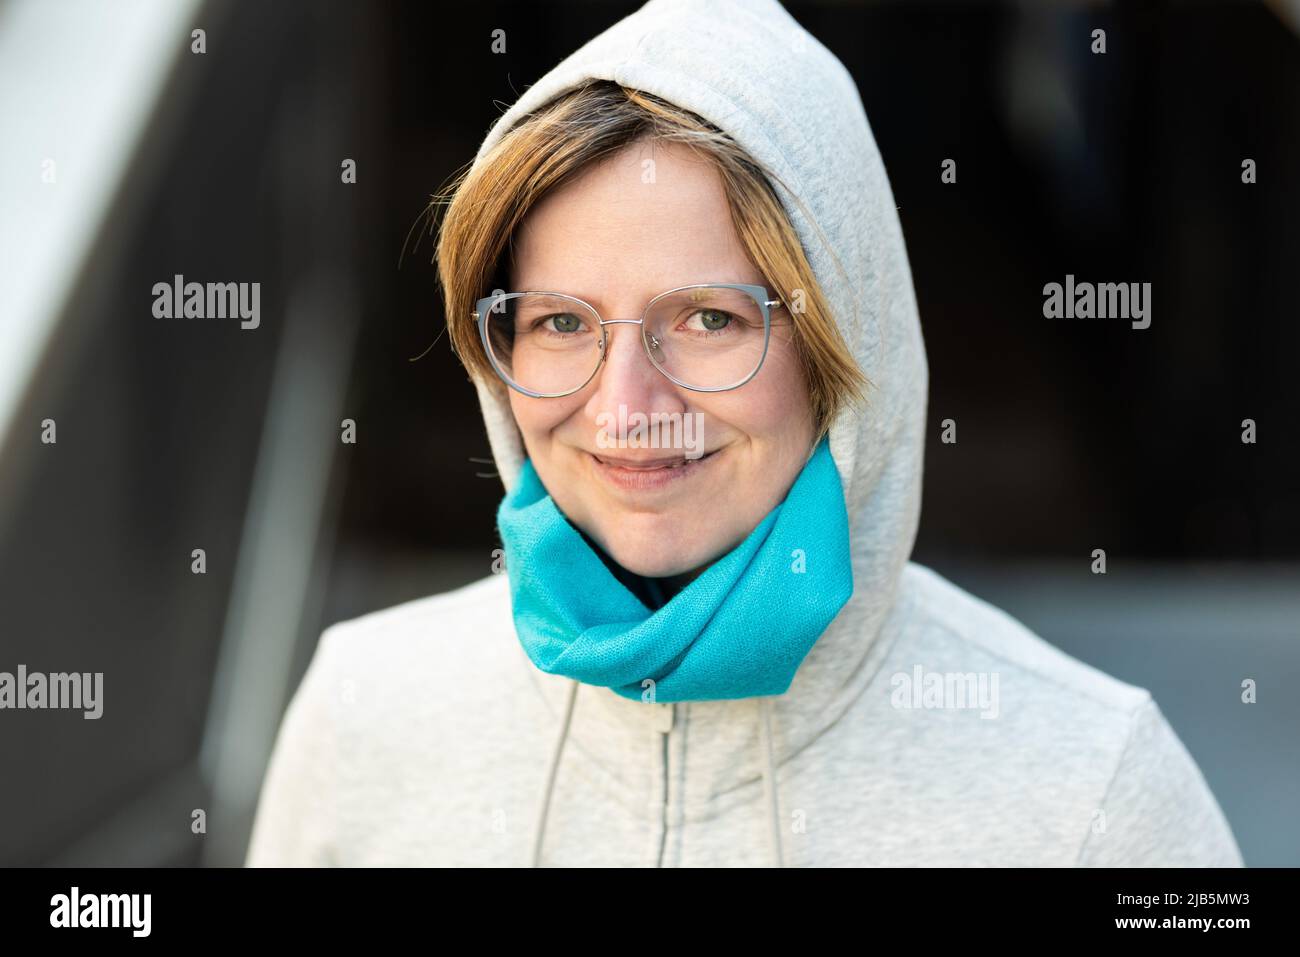 Porträt einer 35-jährigen Frau, die einen Kapuzenpullover trägt und selbstbewusst aussieht, Brüssel, Belgien. Stockfoto